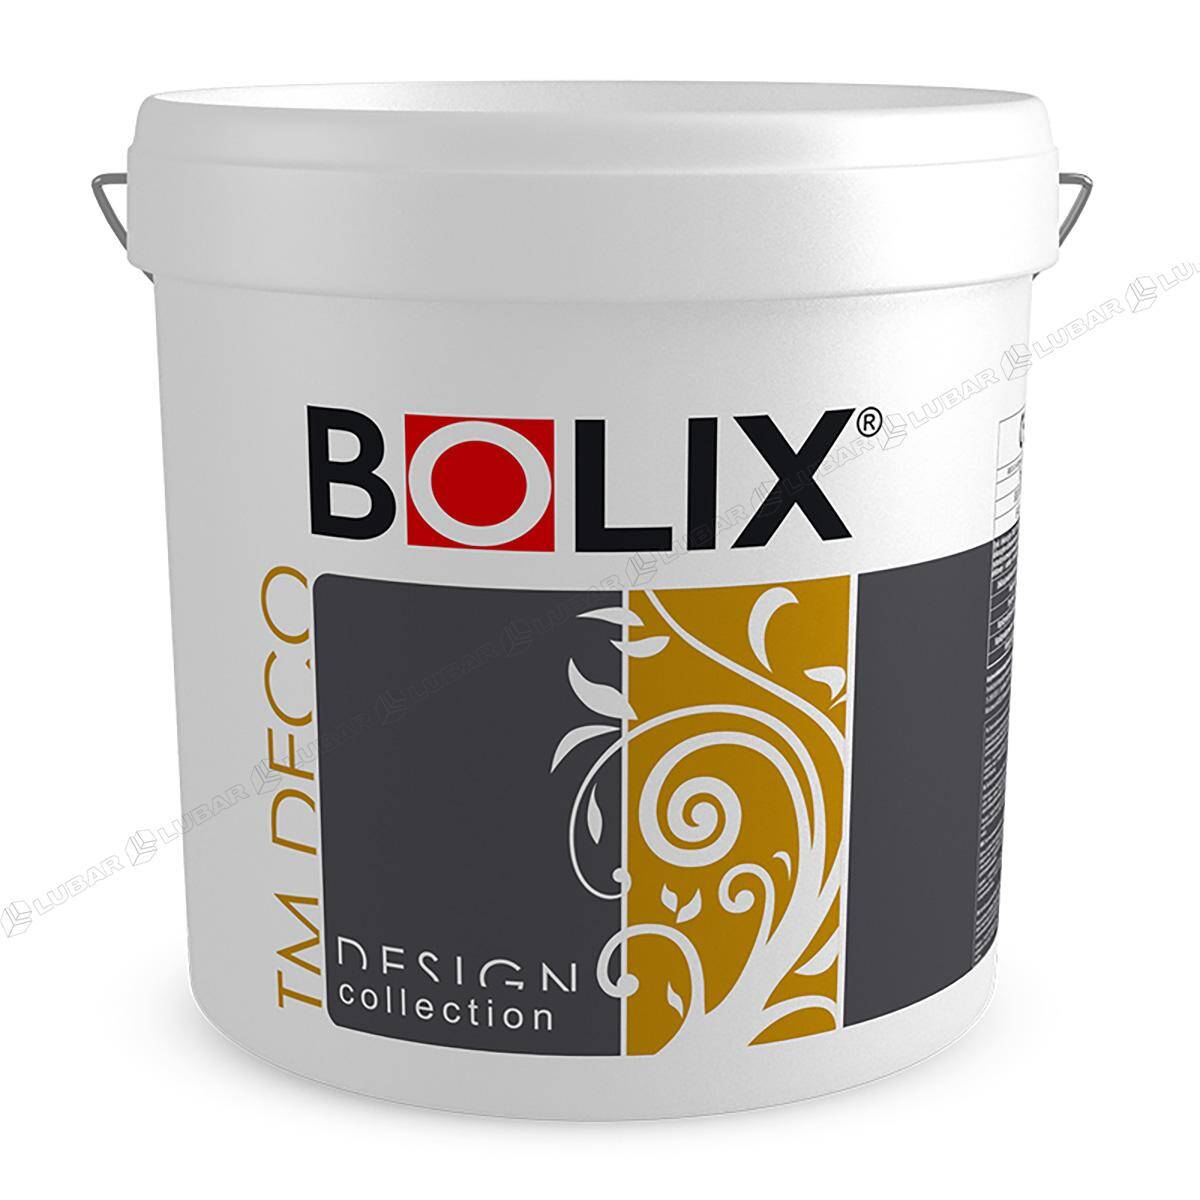 BOLIX TM DECO Tynk dekoracyjny z miką 25 kg ELEGANT GREY TMD49